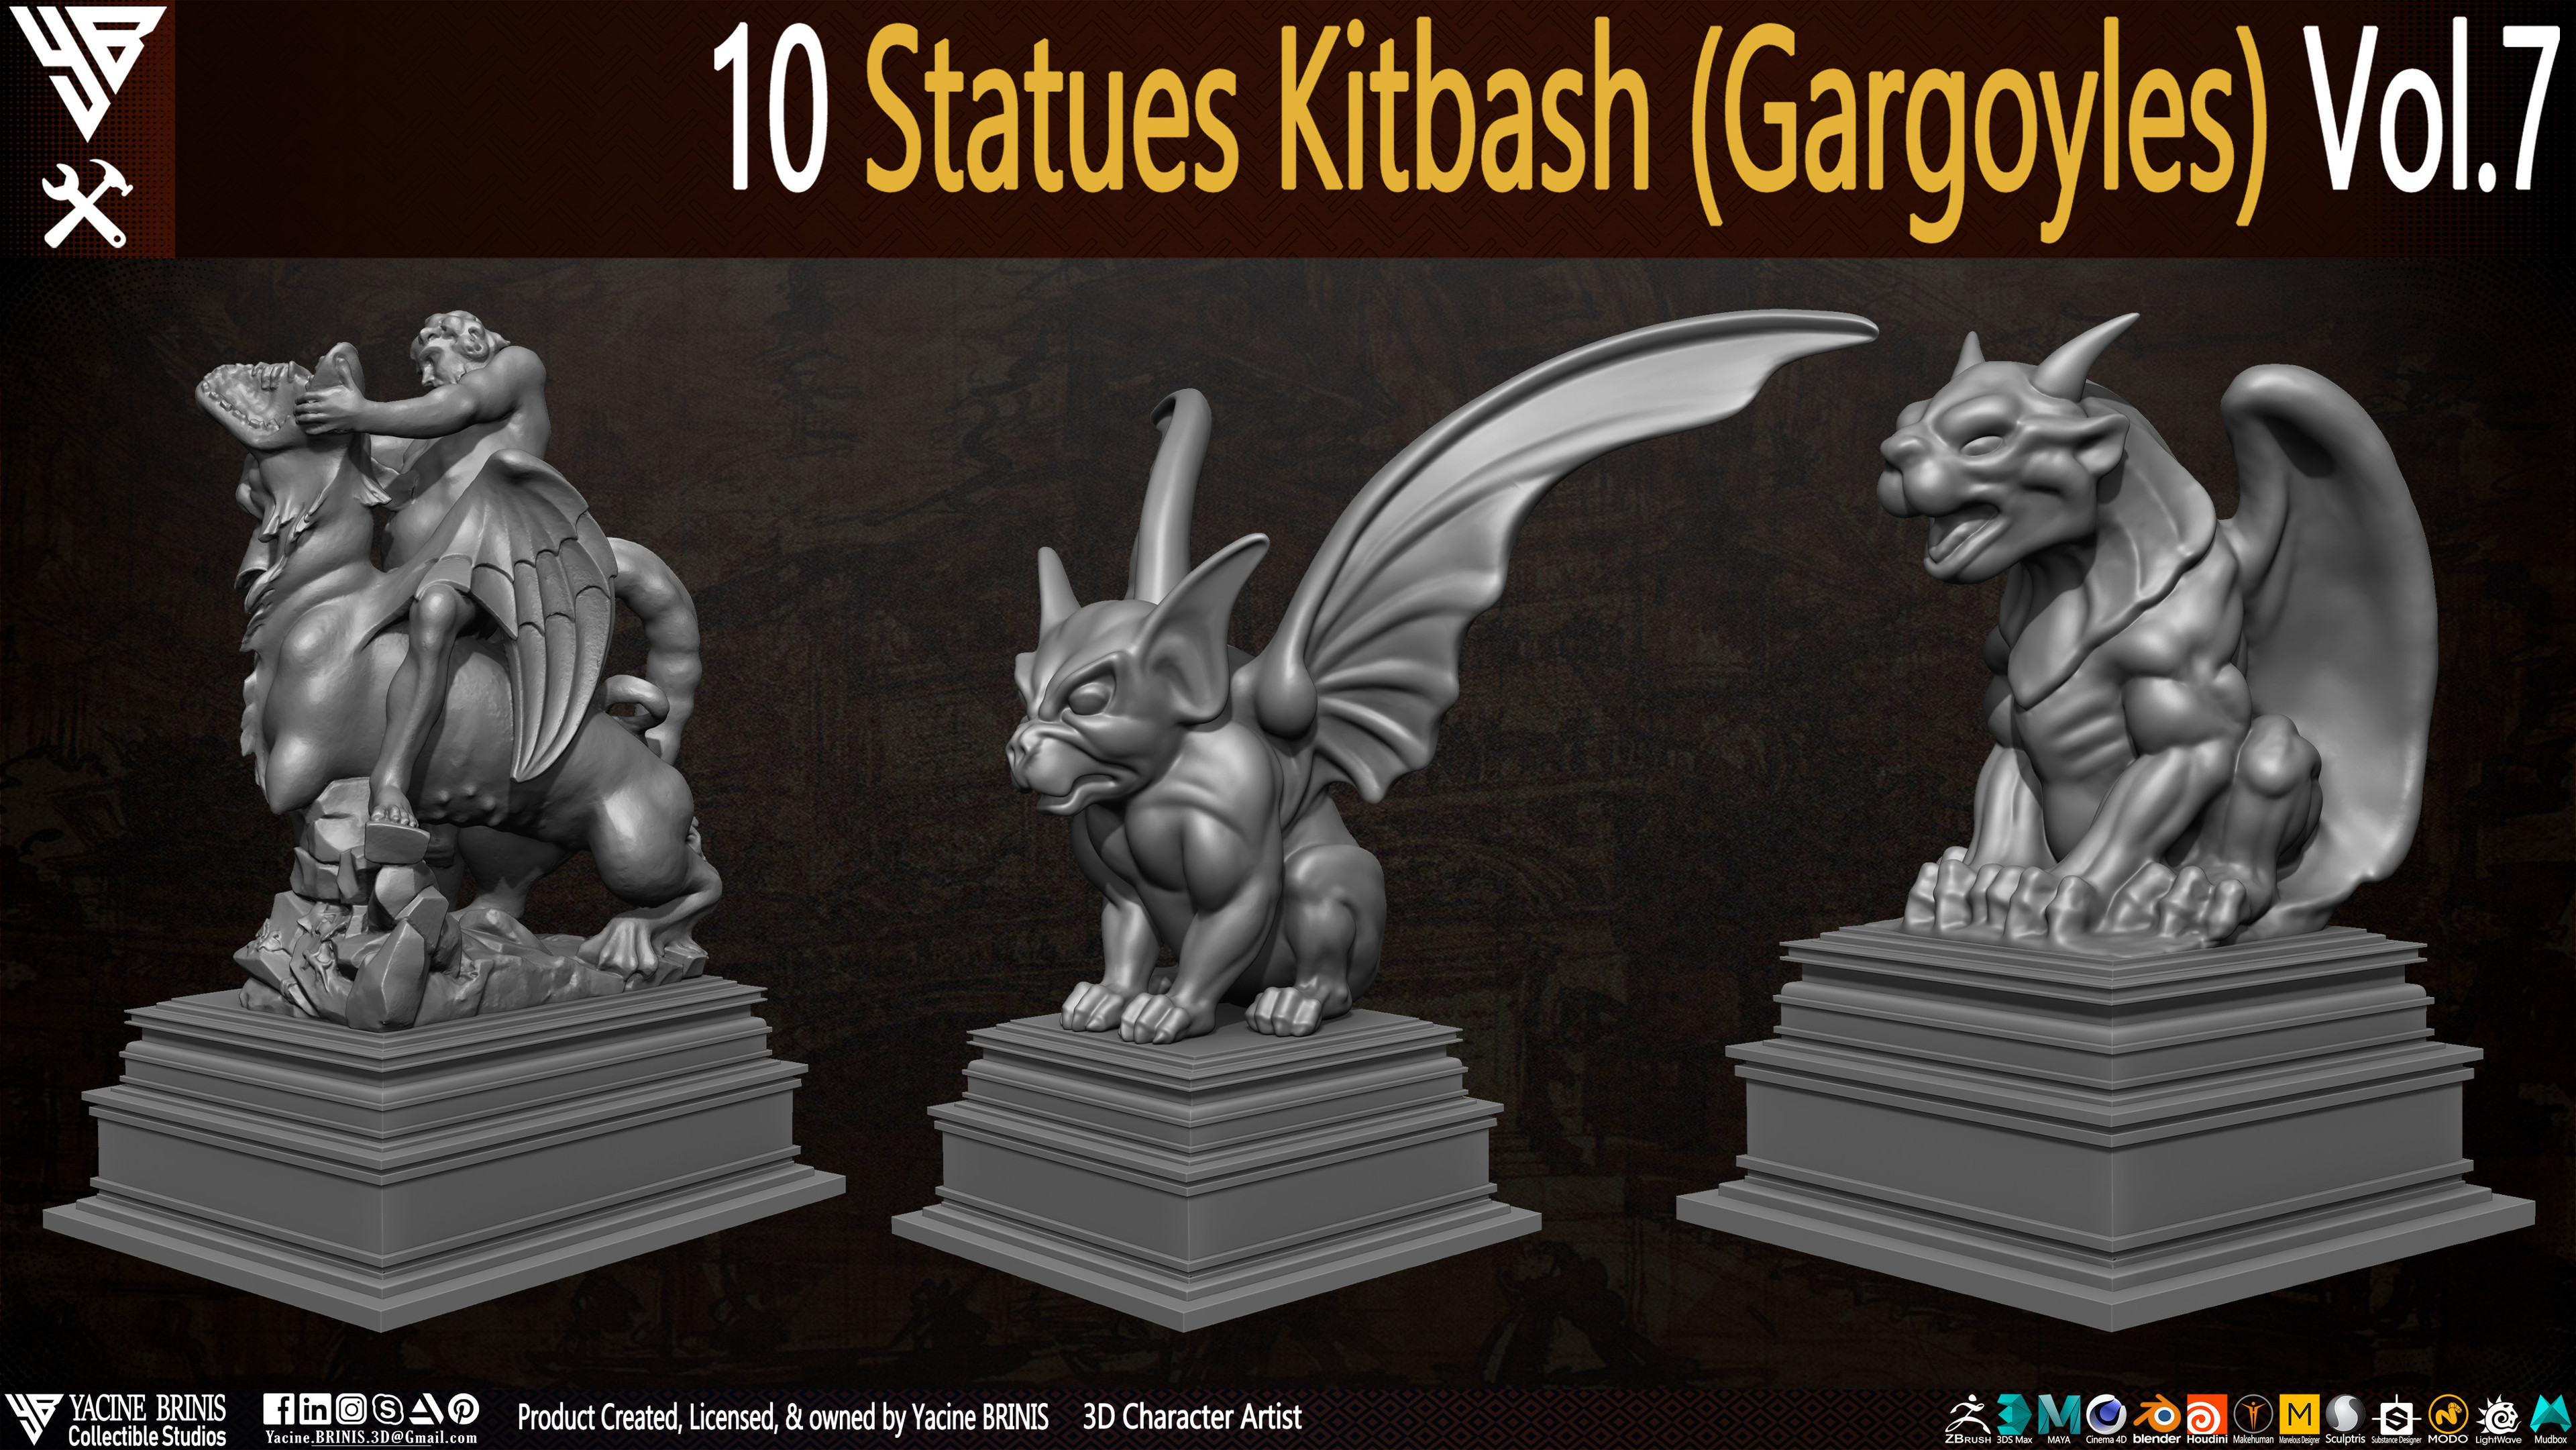 Statues Kitbash by yacine brinis Set 45